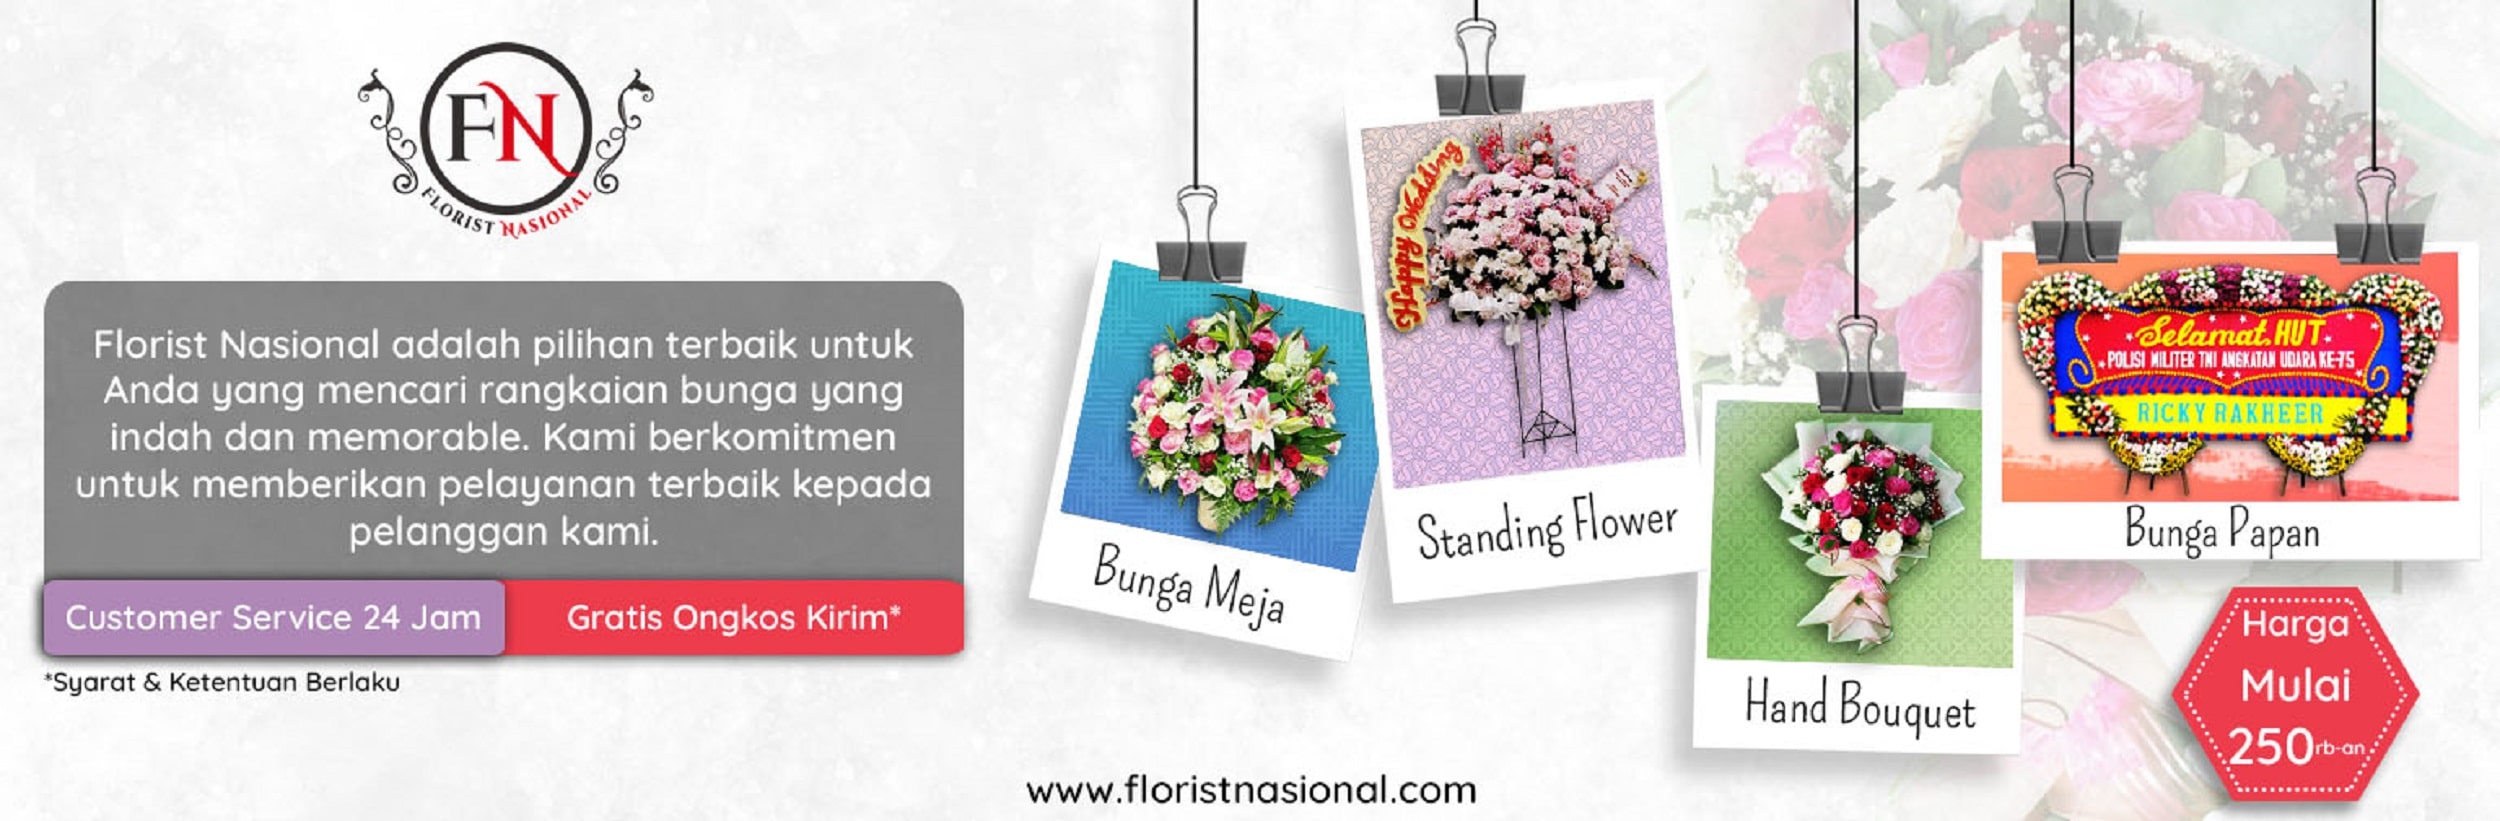 Banner Toko Bunga Jakarta - Toko Bunga Florist Nasional